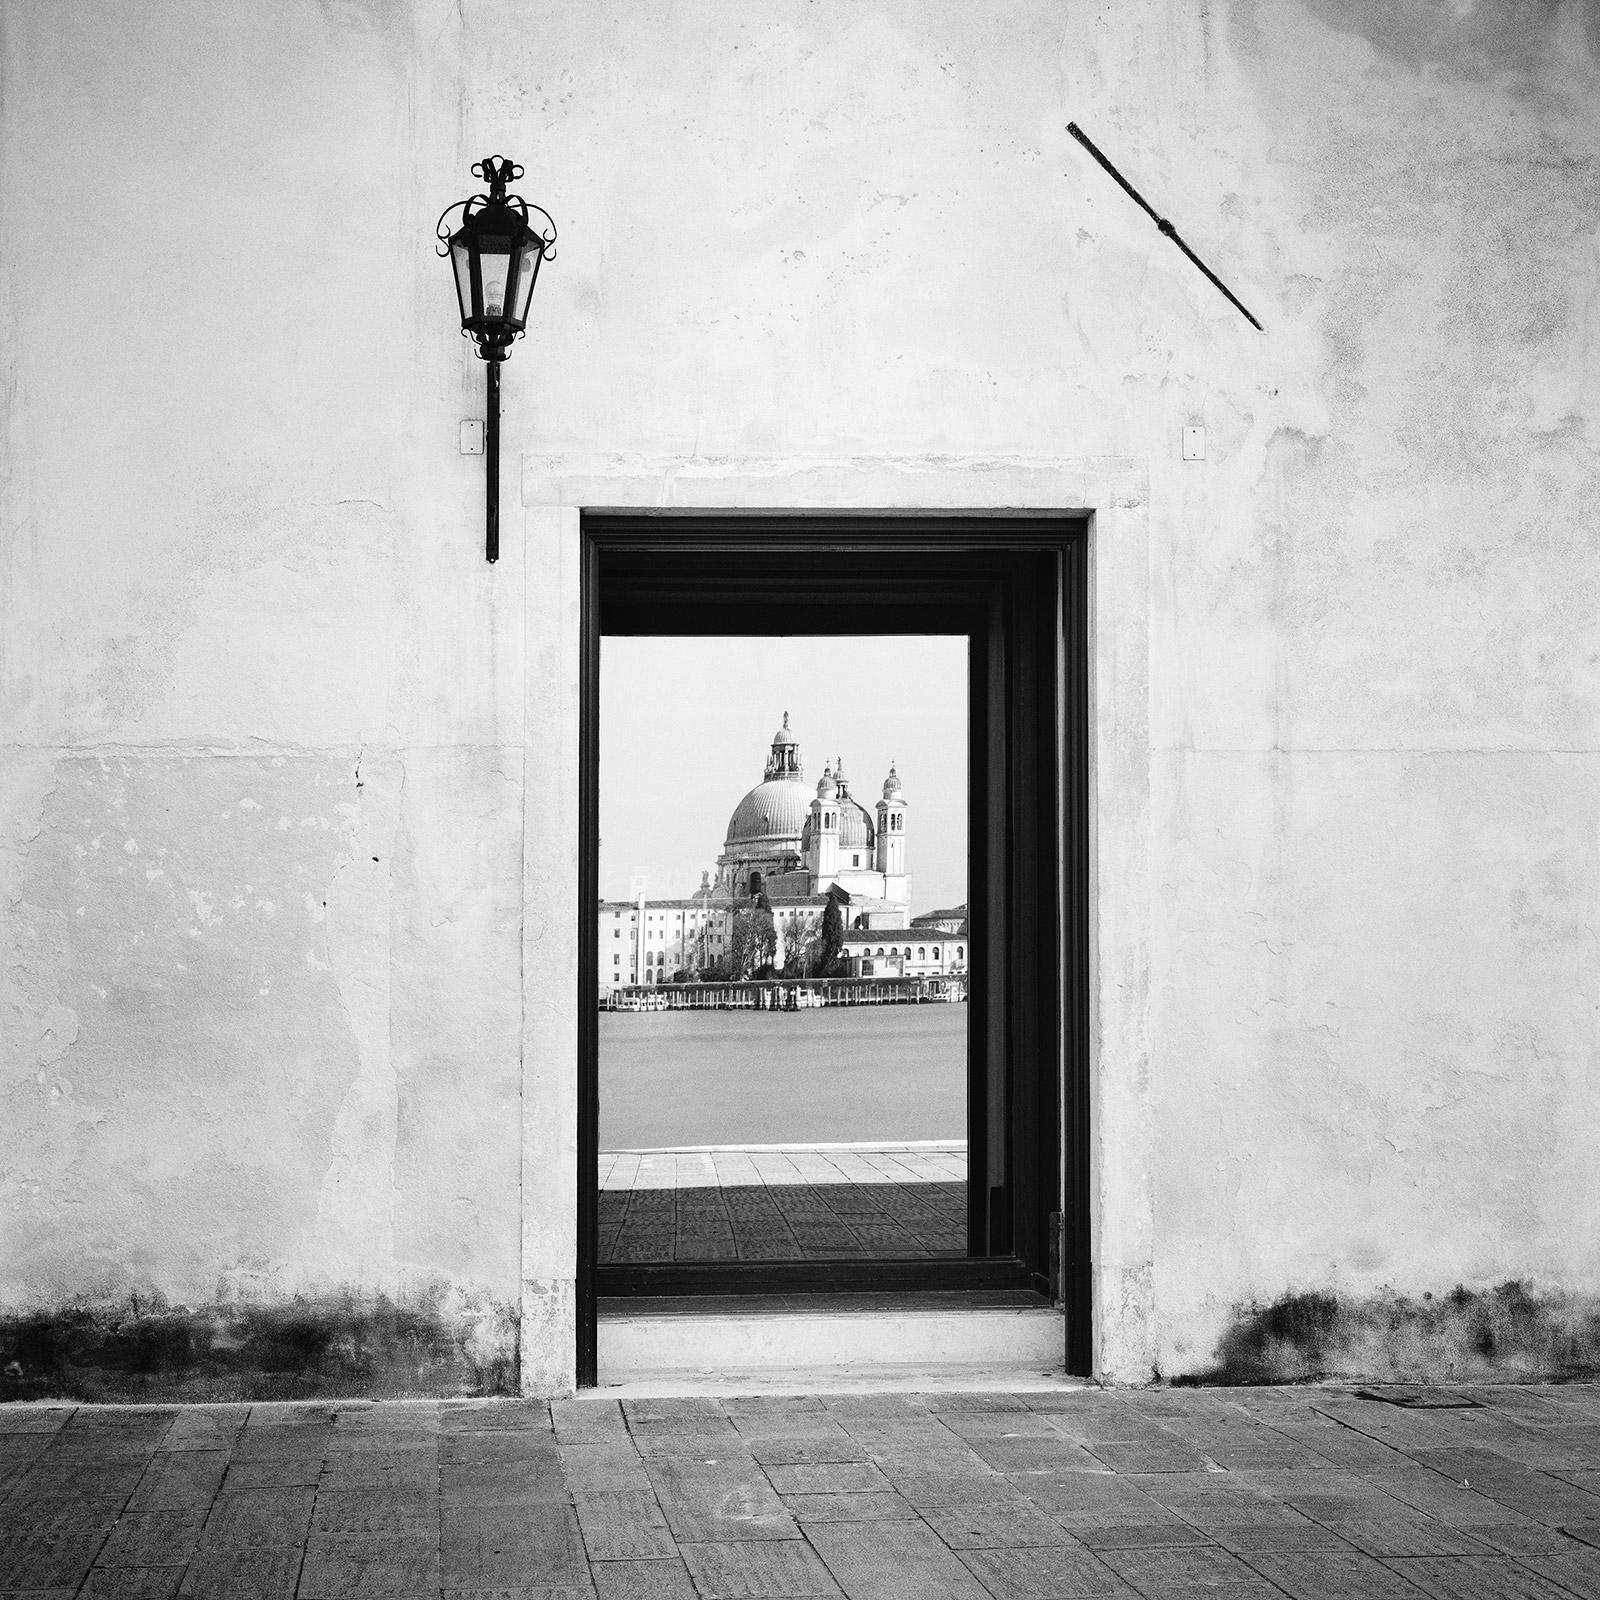 Reflection, Venedig, Italien, Schwarz-Weiß-Fotografiedruck der bildenden Kunst